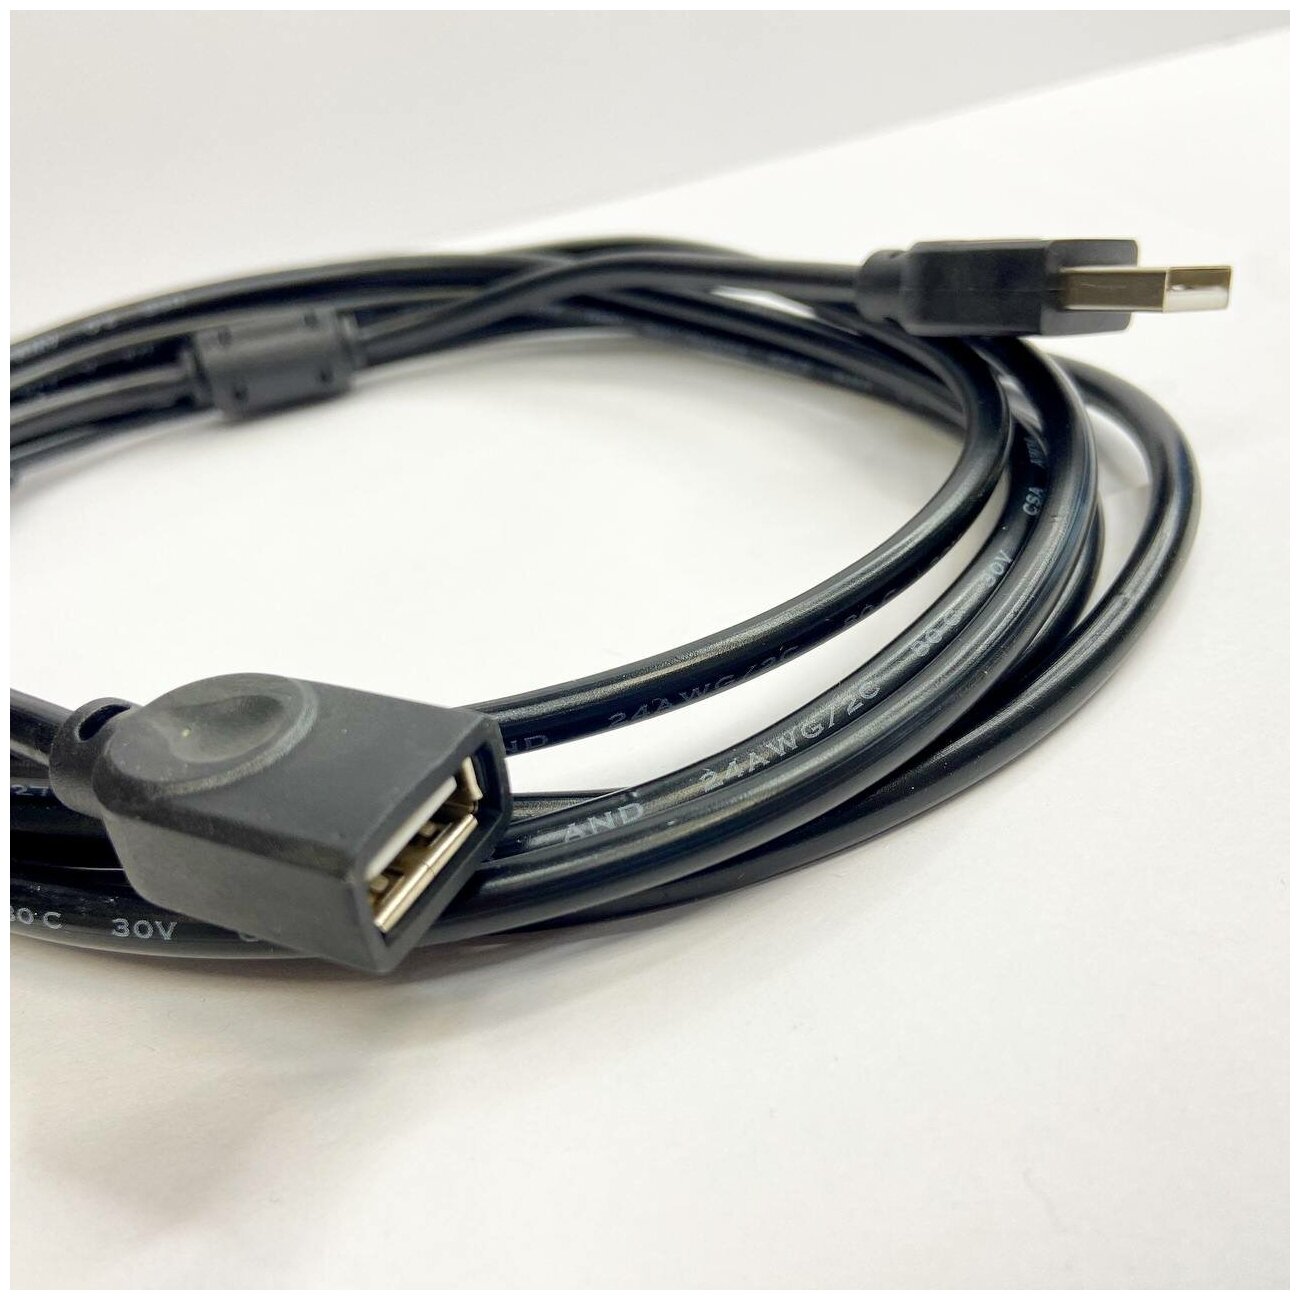 USB Удлинитель на USB 2.0 мама папа 2.7 метра USB (F) USB (M) удлинитель юсб для флешек мышек принтеров сканеров и т. д.